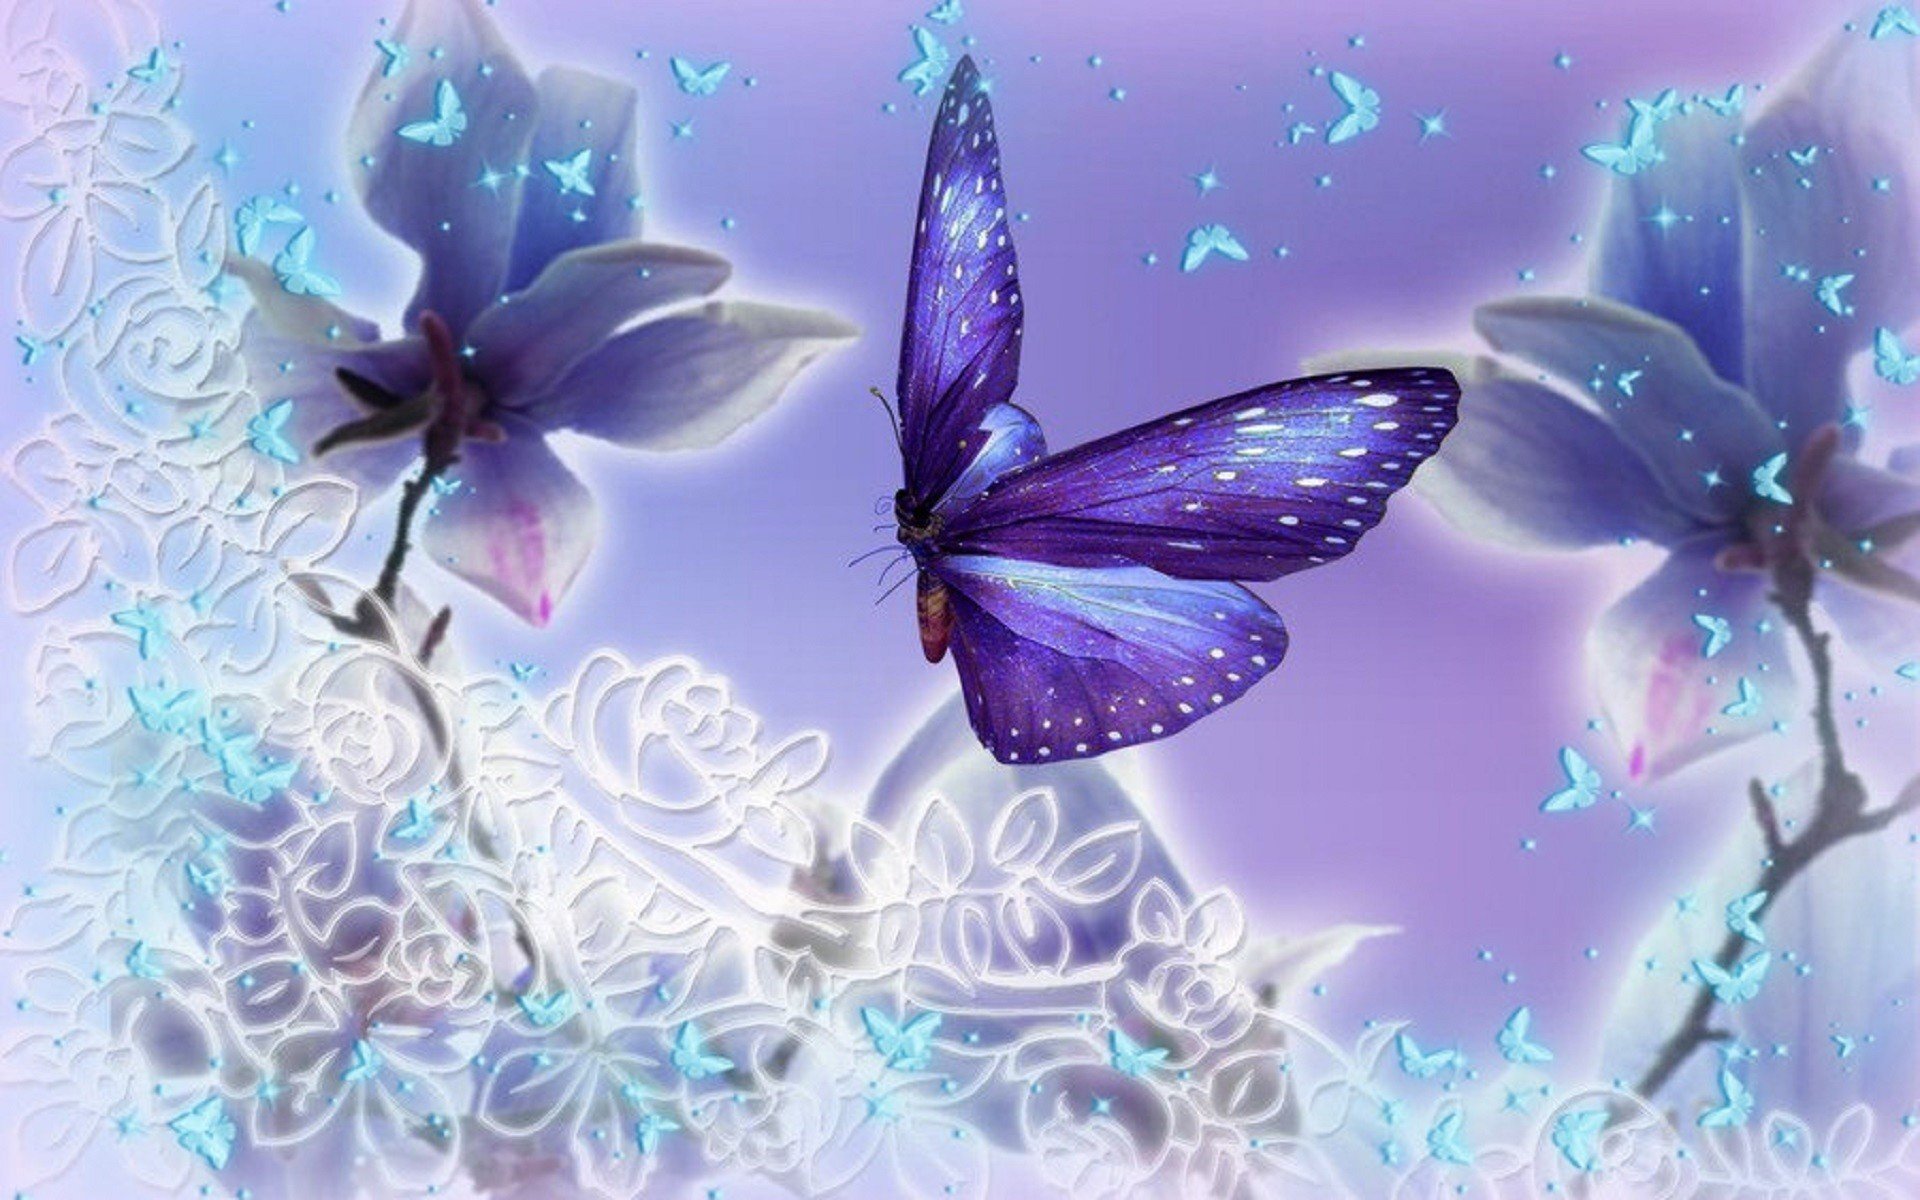 Обои на стол бабочки. Бабочки. Красивый фон с бабочками. Красивые волшебные бабочки. Сказочные бабочки и цветы.